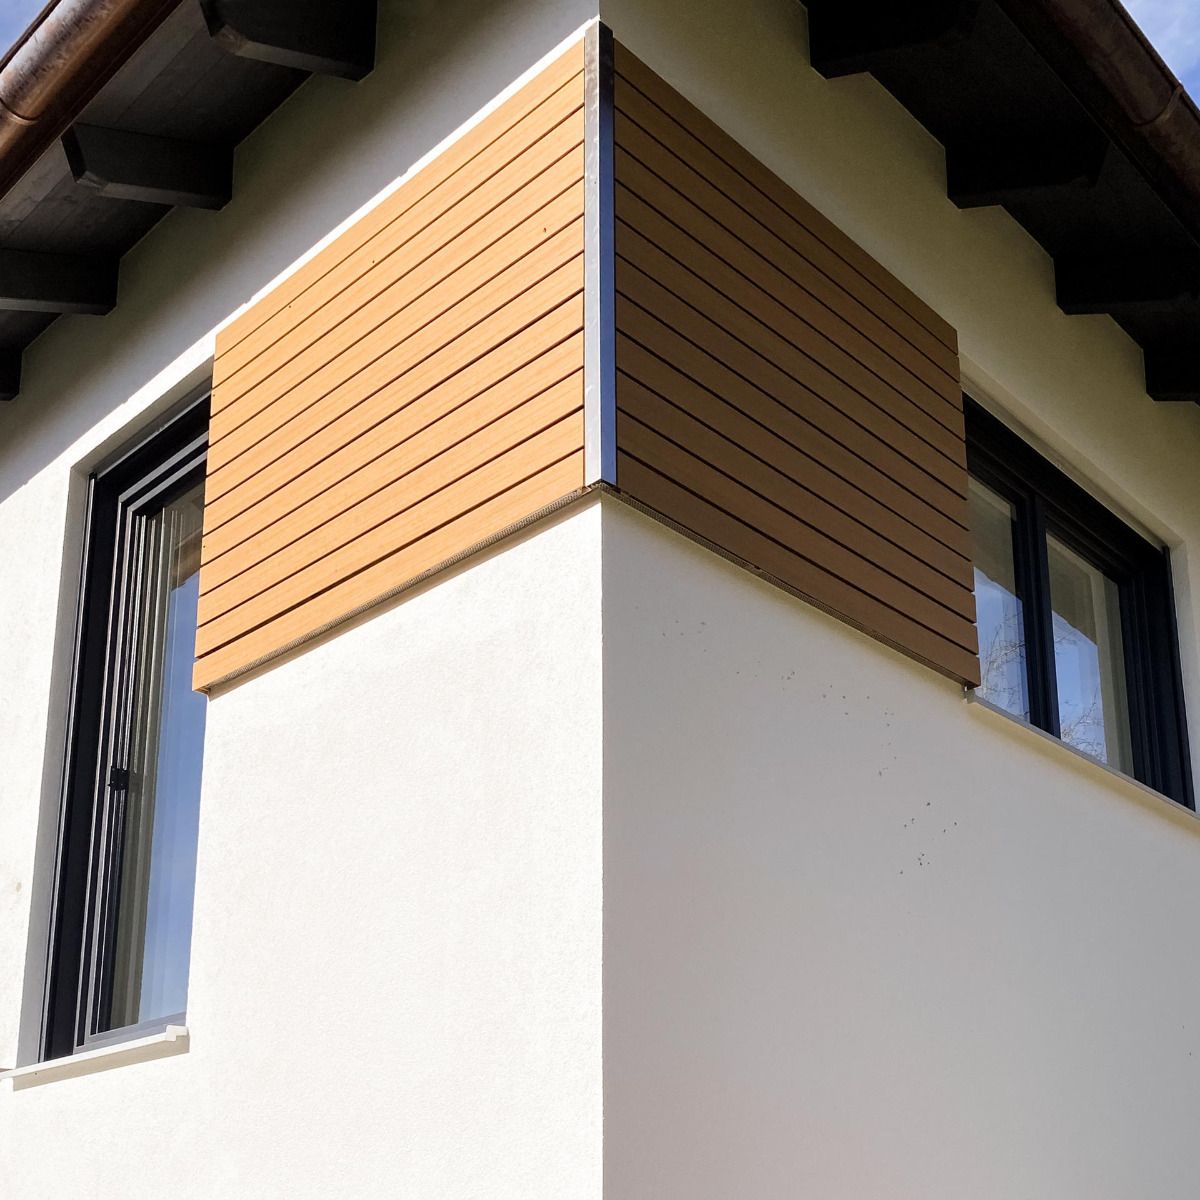 Fassadenpaneele in Rhombusoptik mit Naturinform in der Farbe Eichenbraun.